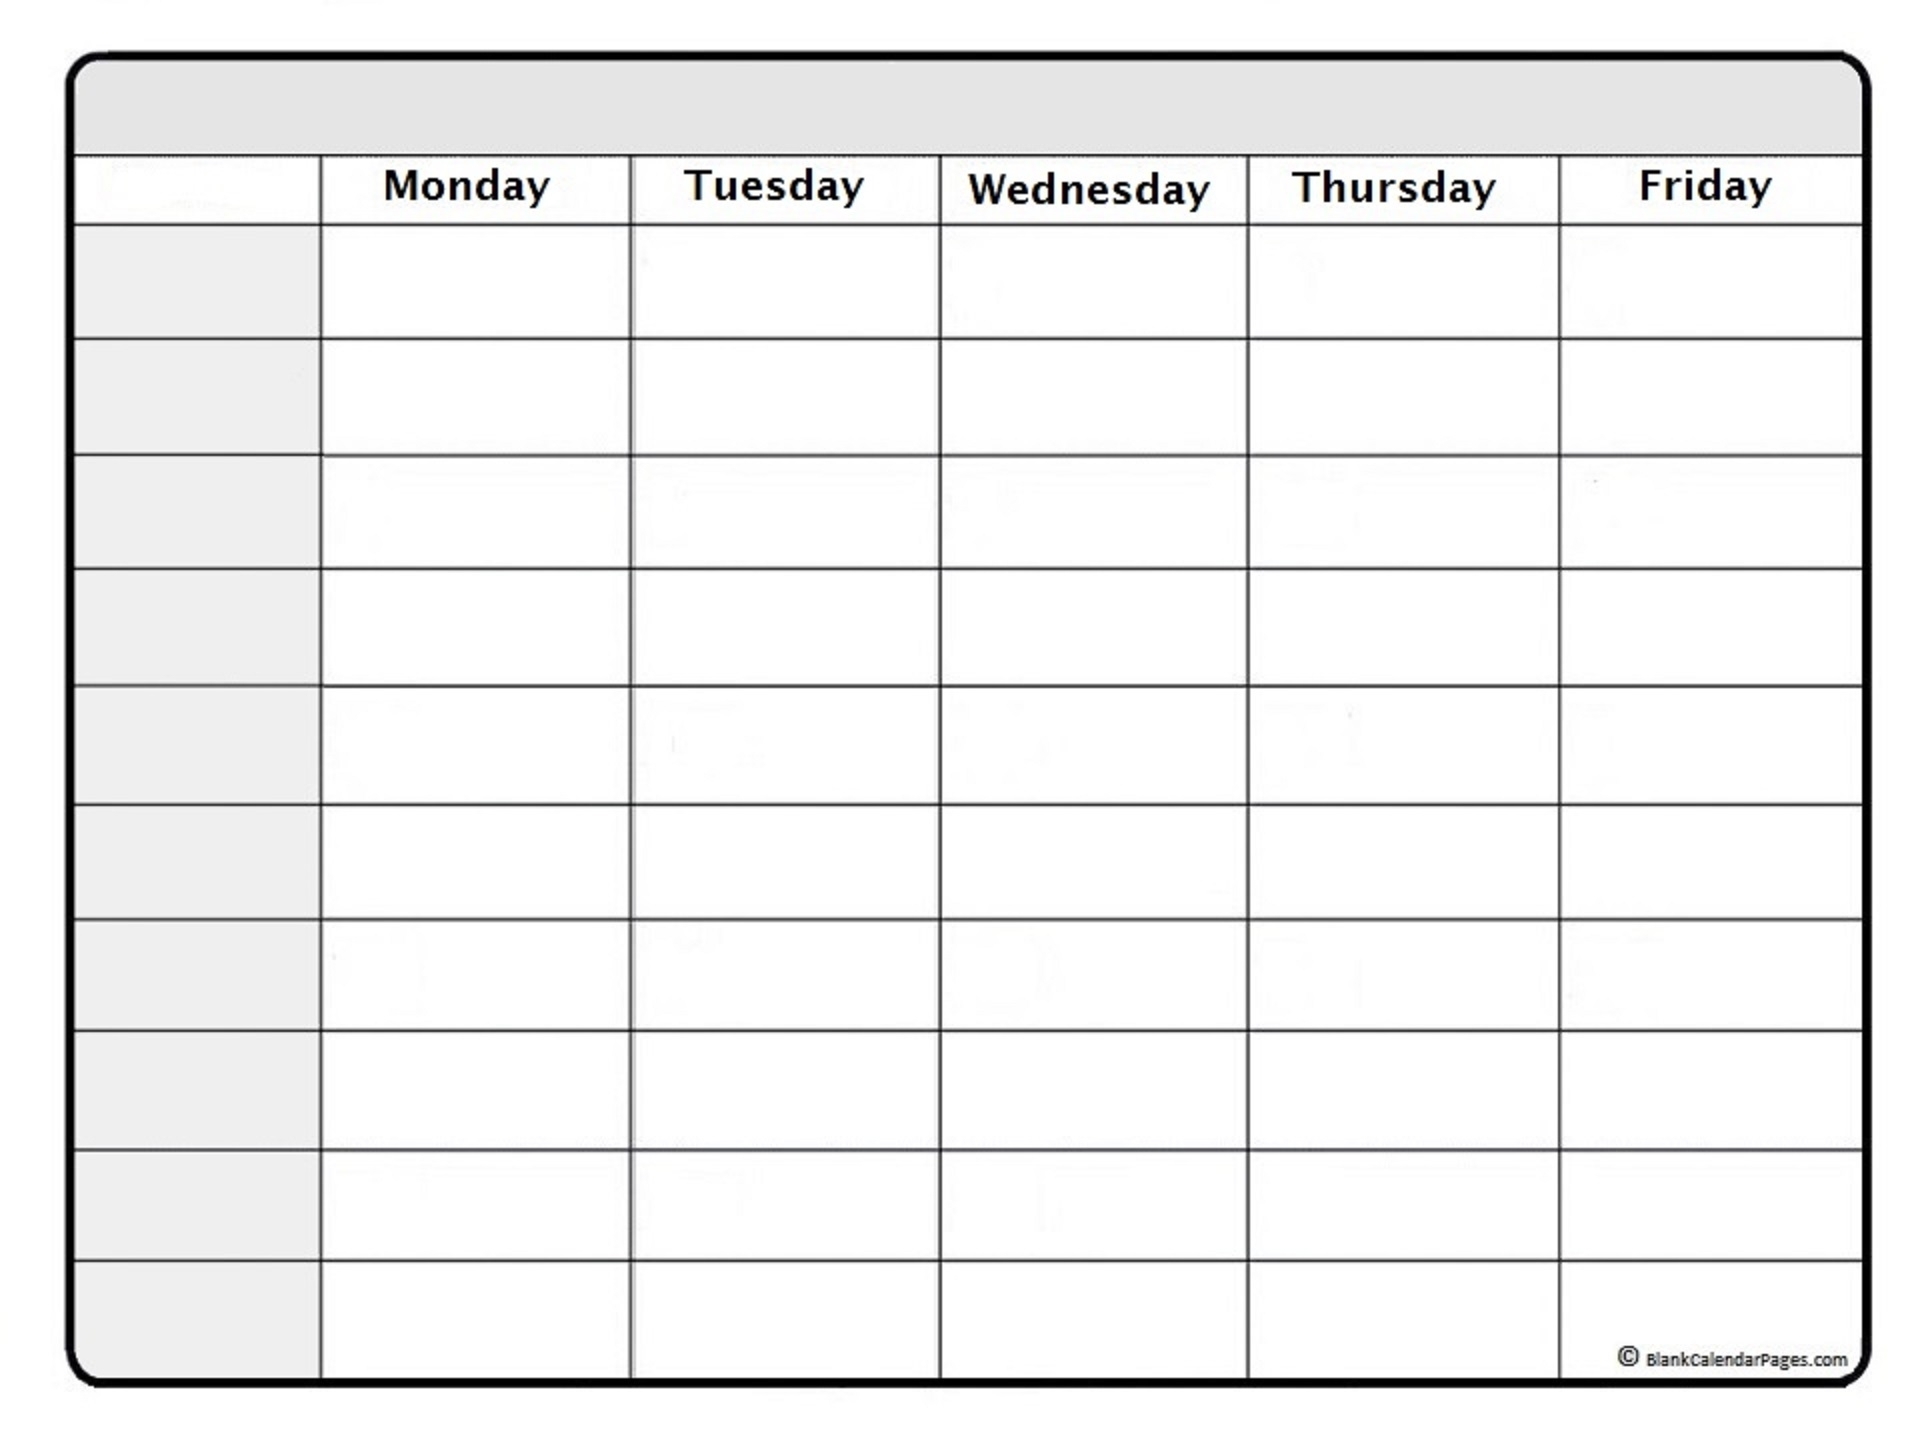 May 2019 Weekly Calendar | May 2019 Weekly Calendar Template inside Free Blank Printable Weekly Calendar Template